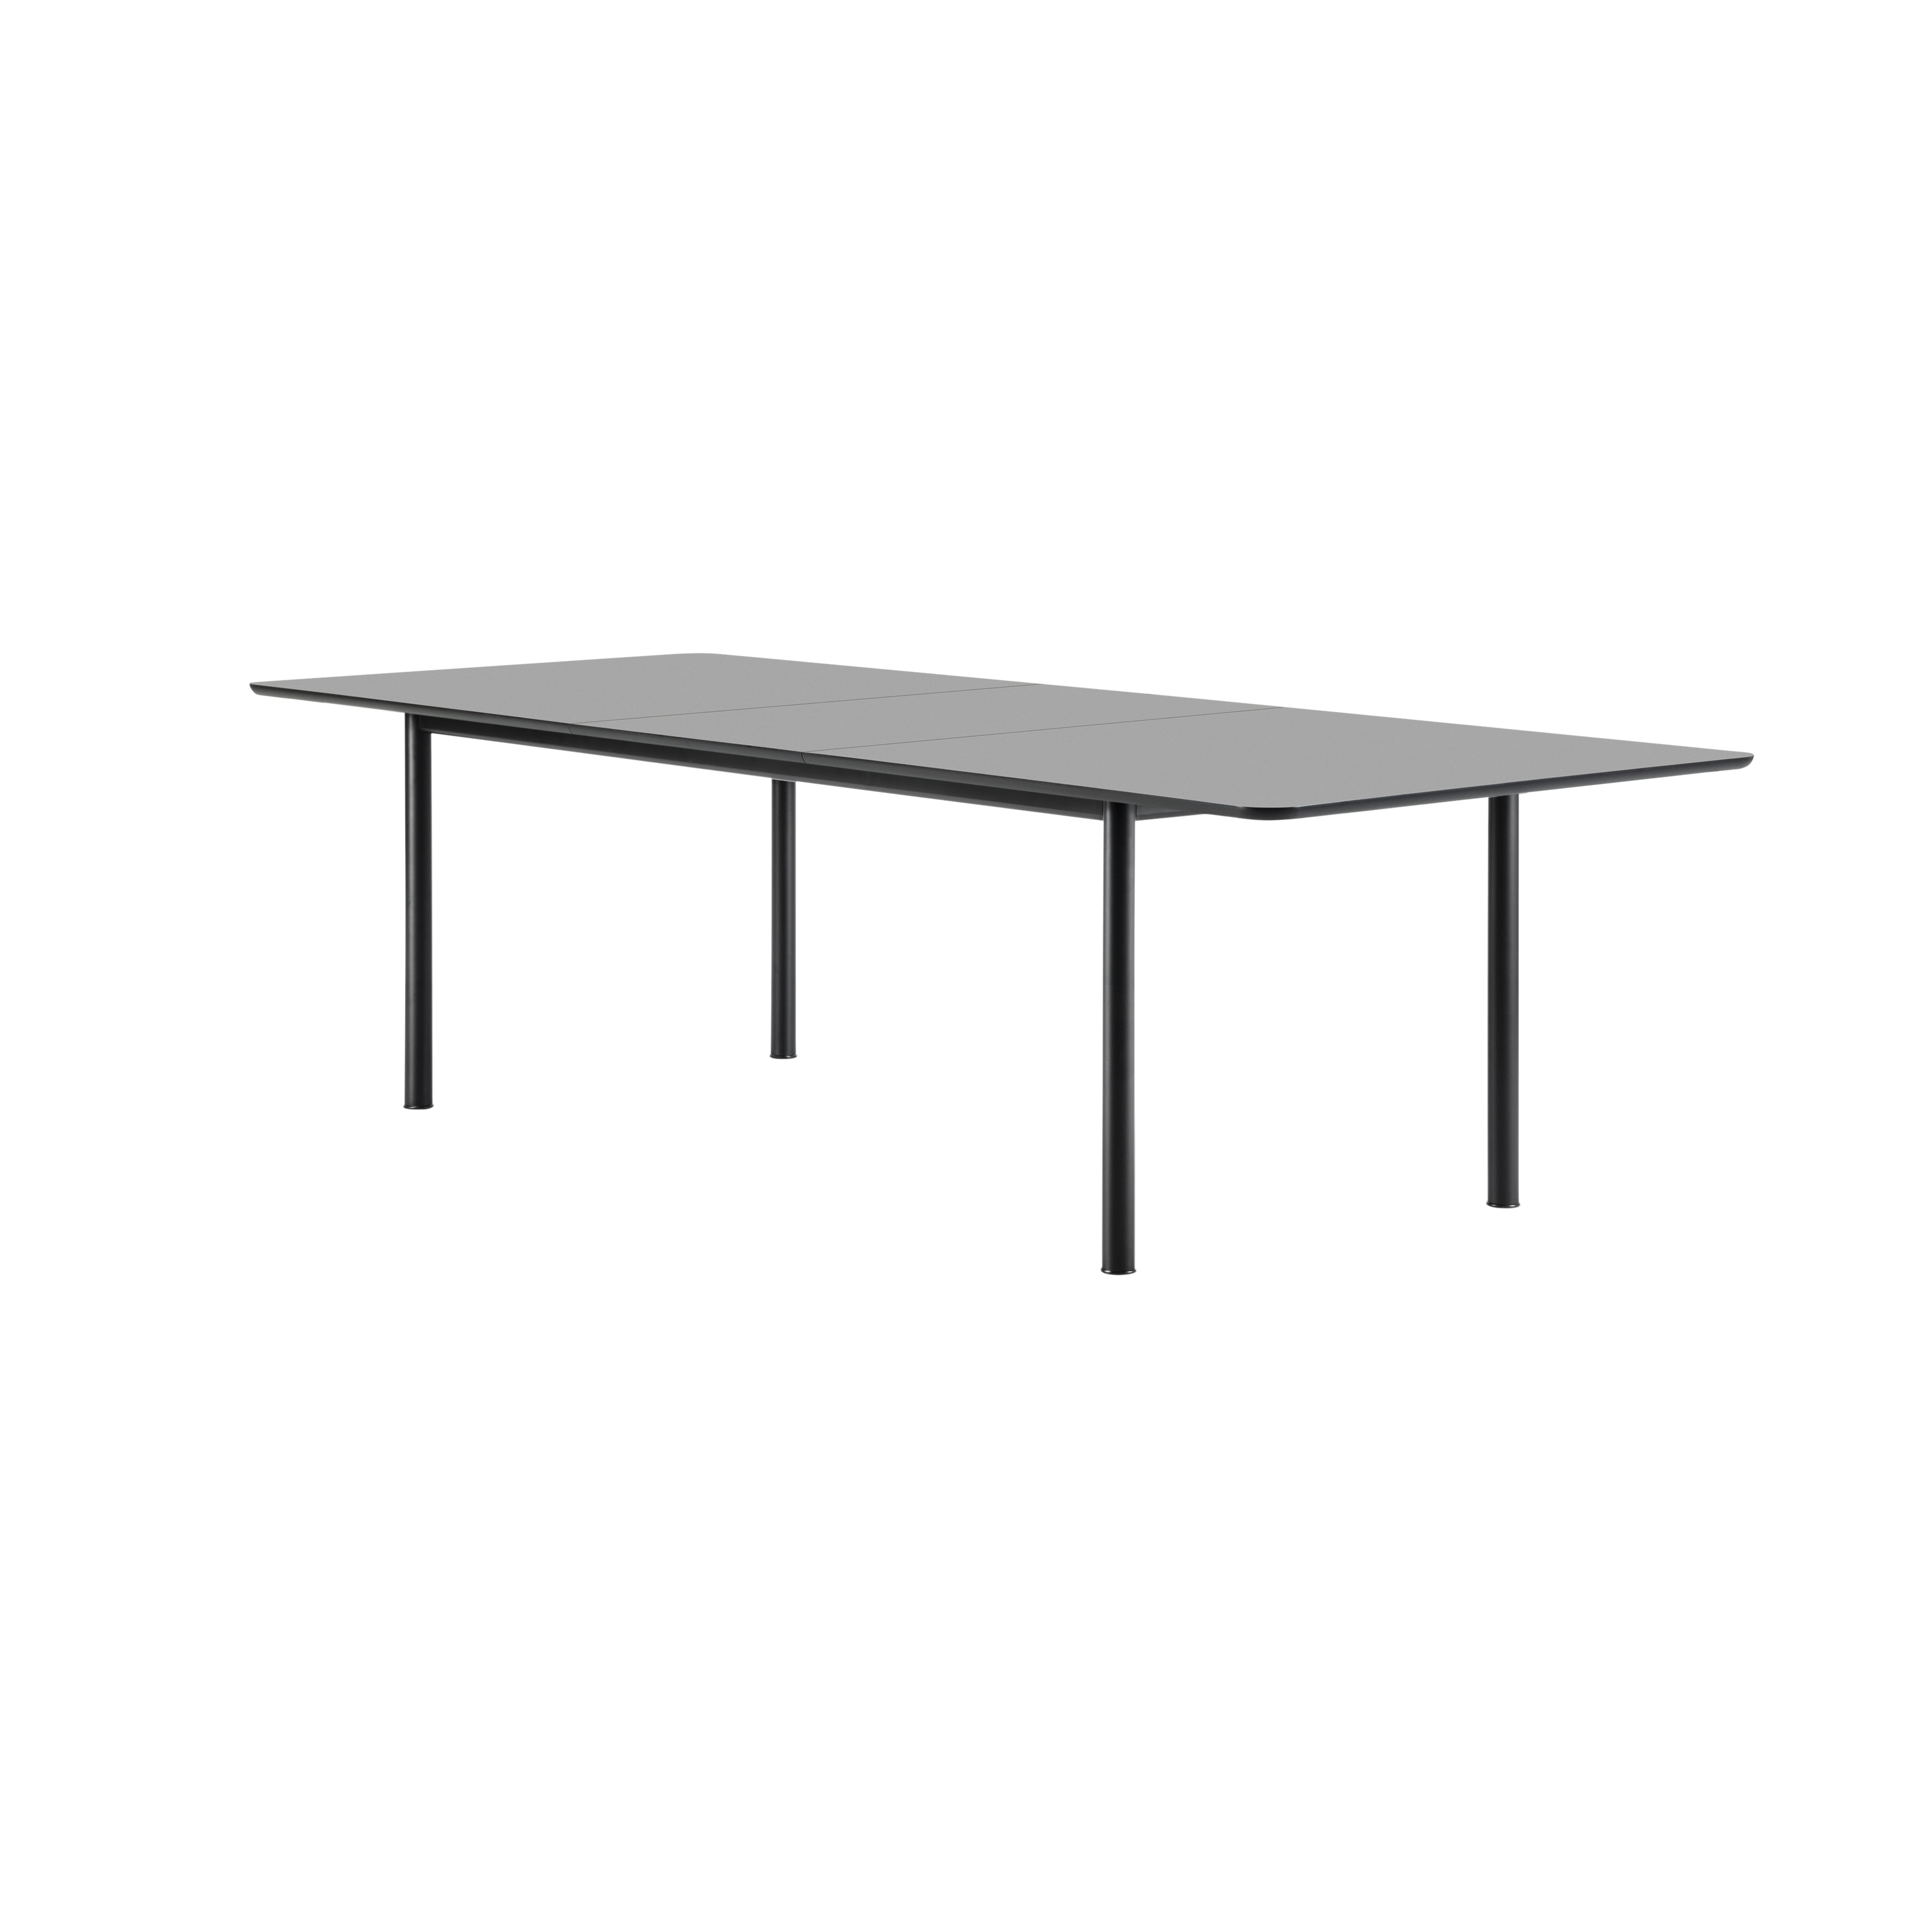 Plan Extendable Table: Black Laminate + Black